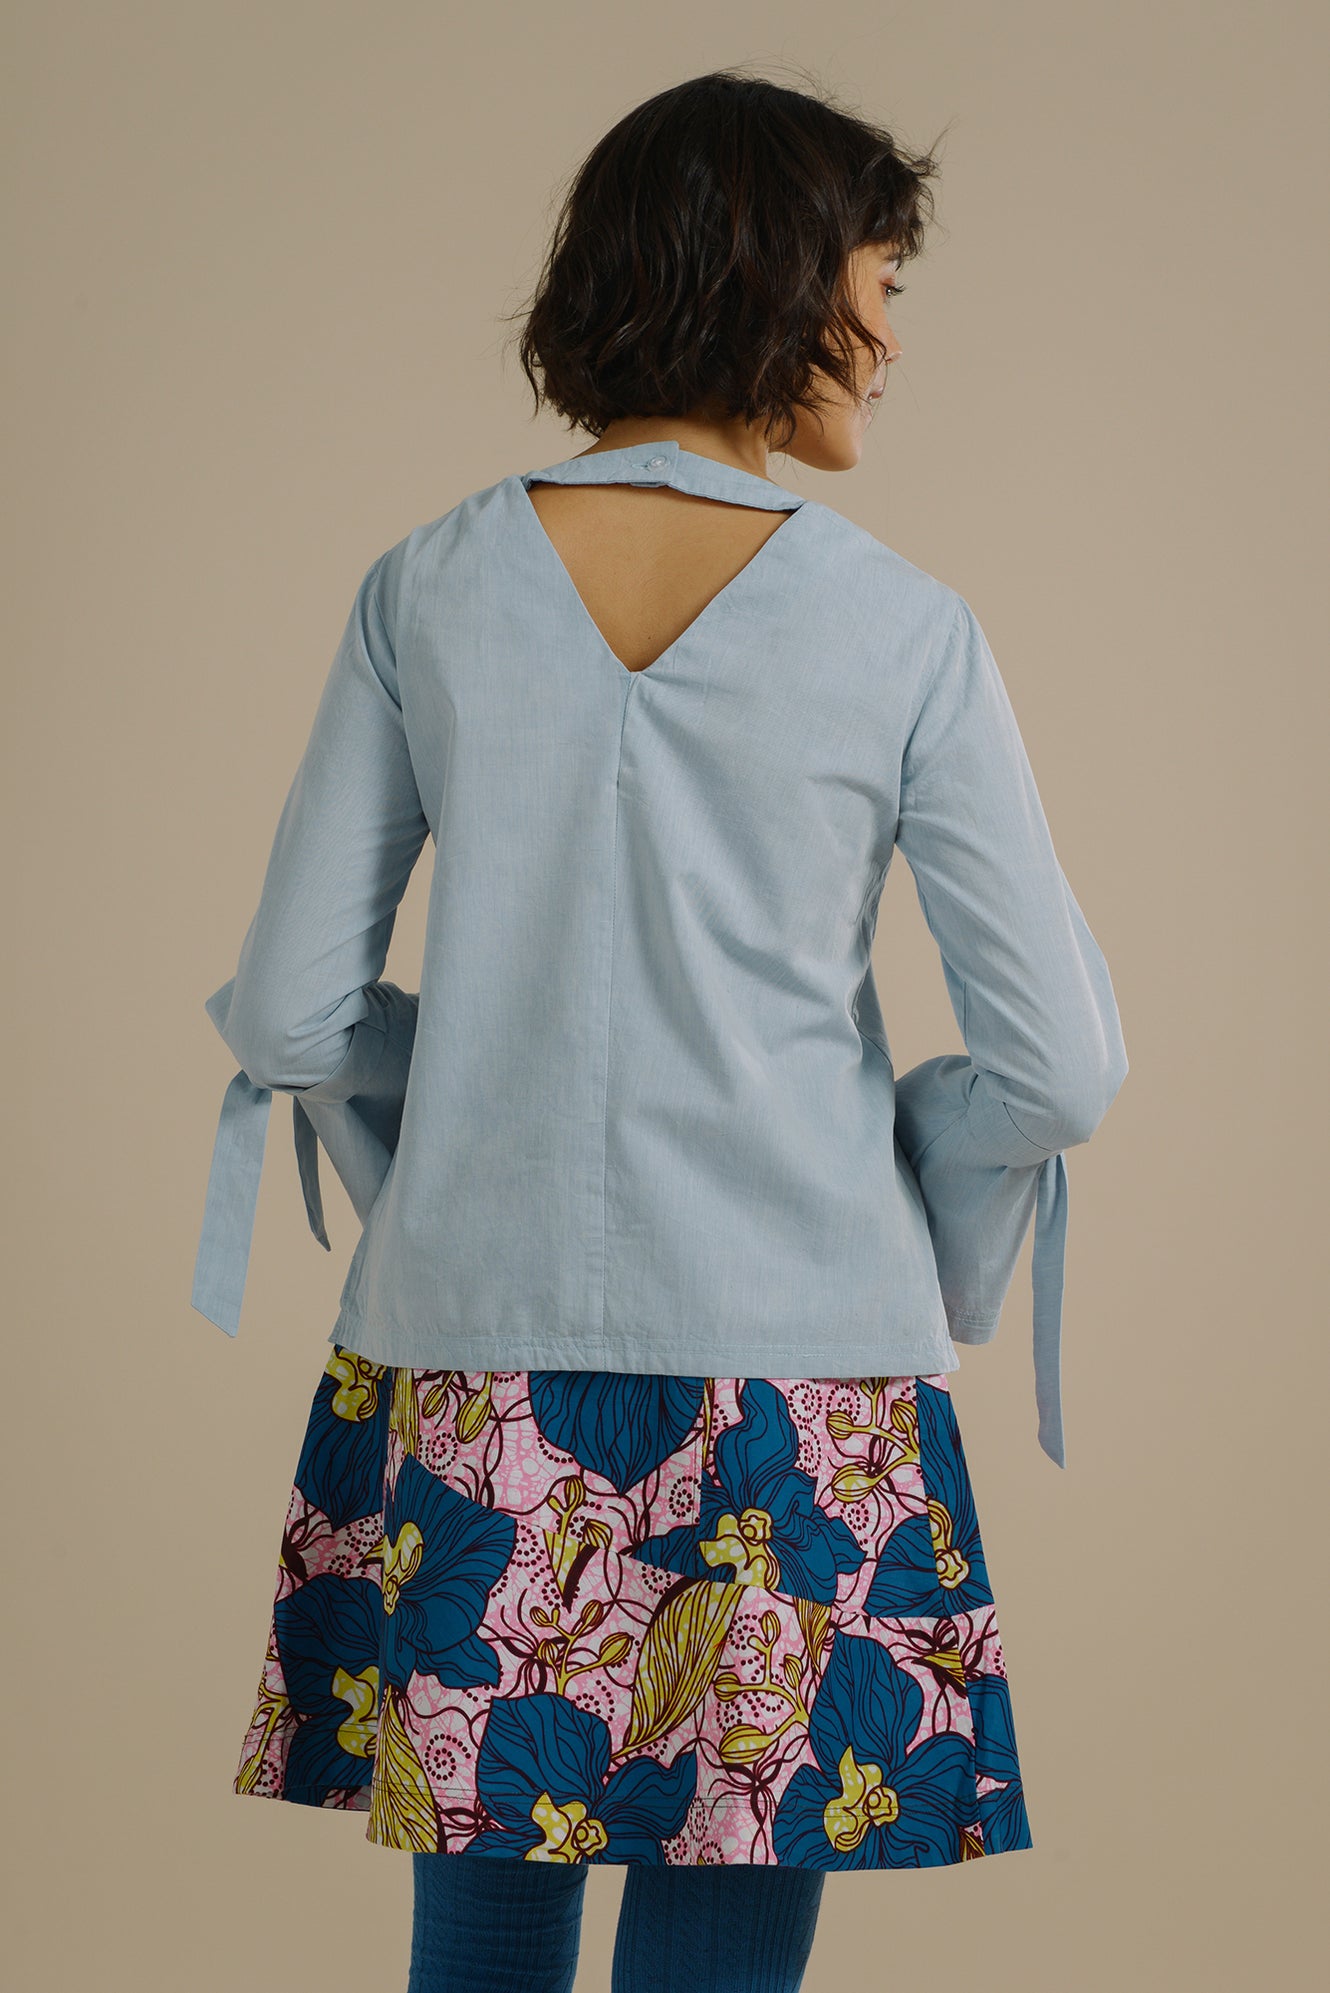 Mayamiko | Limited Edition Printed Tops, Kimonos, Bralets, Shirts